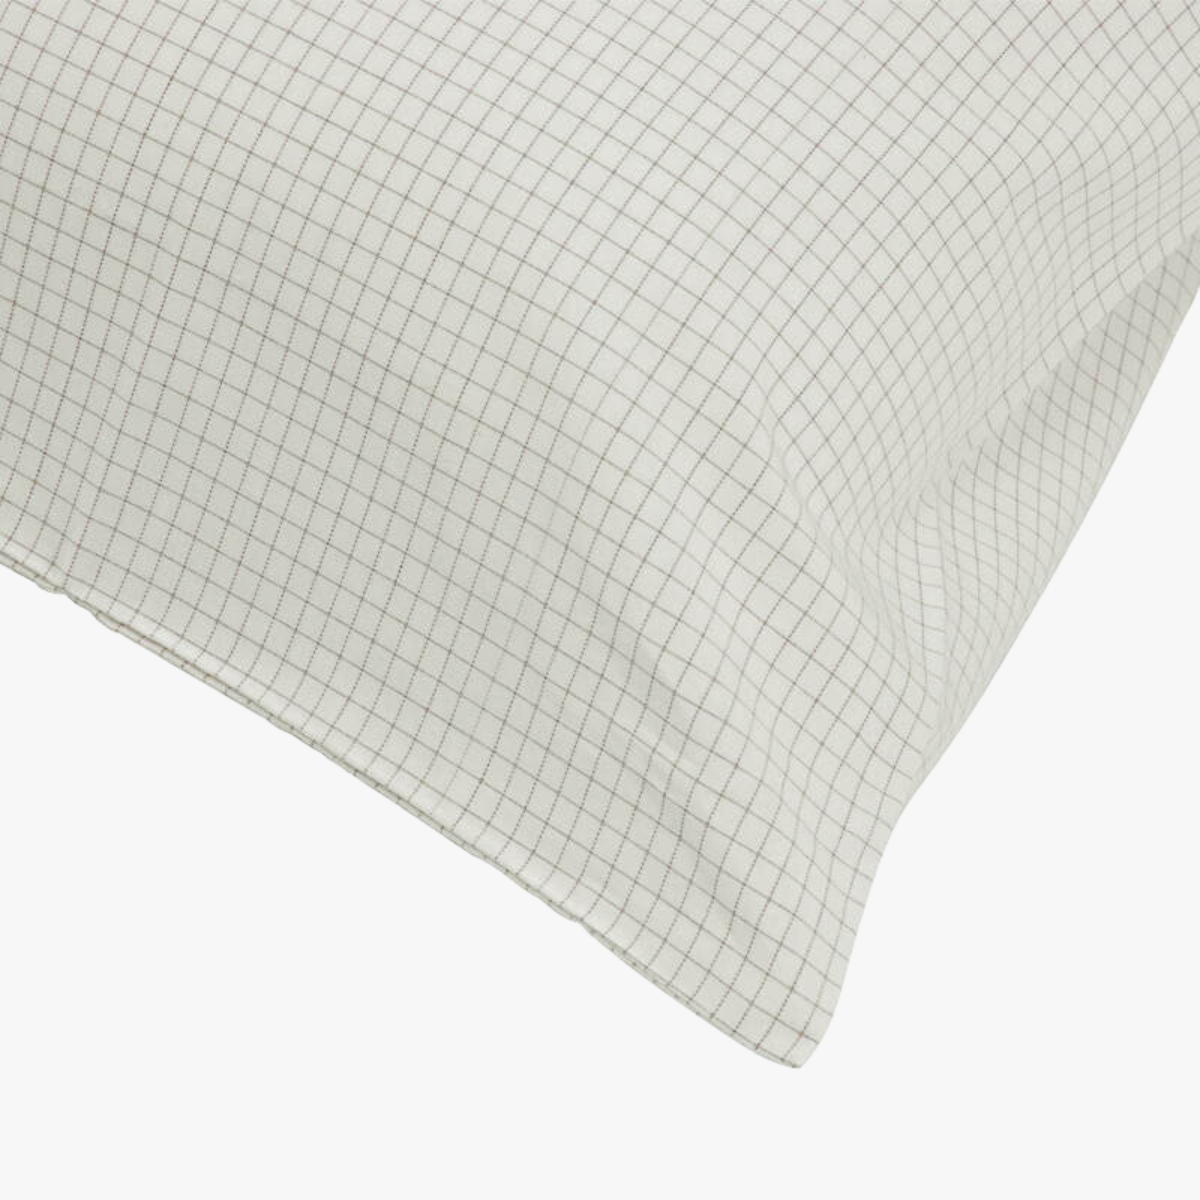 EMF Protective Pillowcase